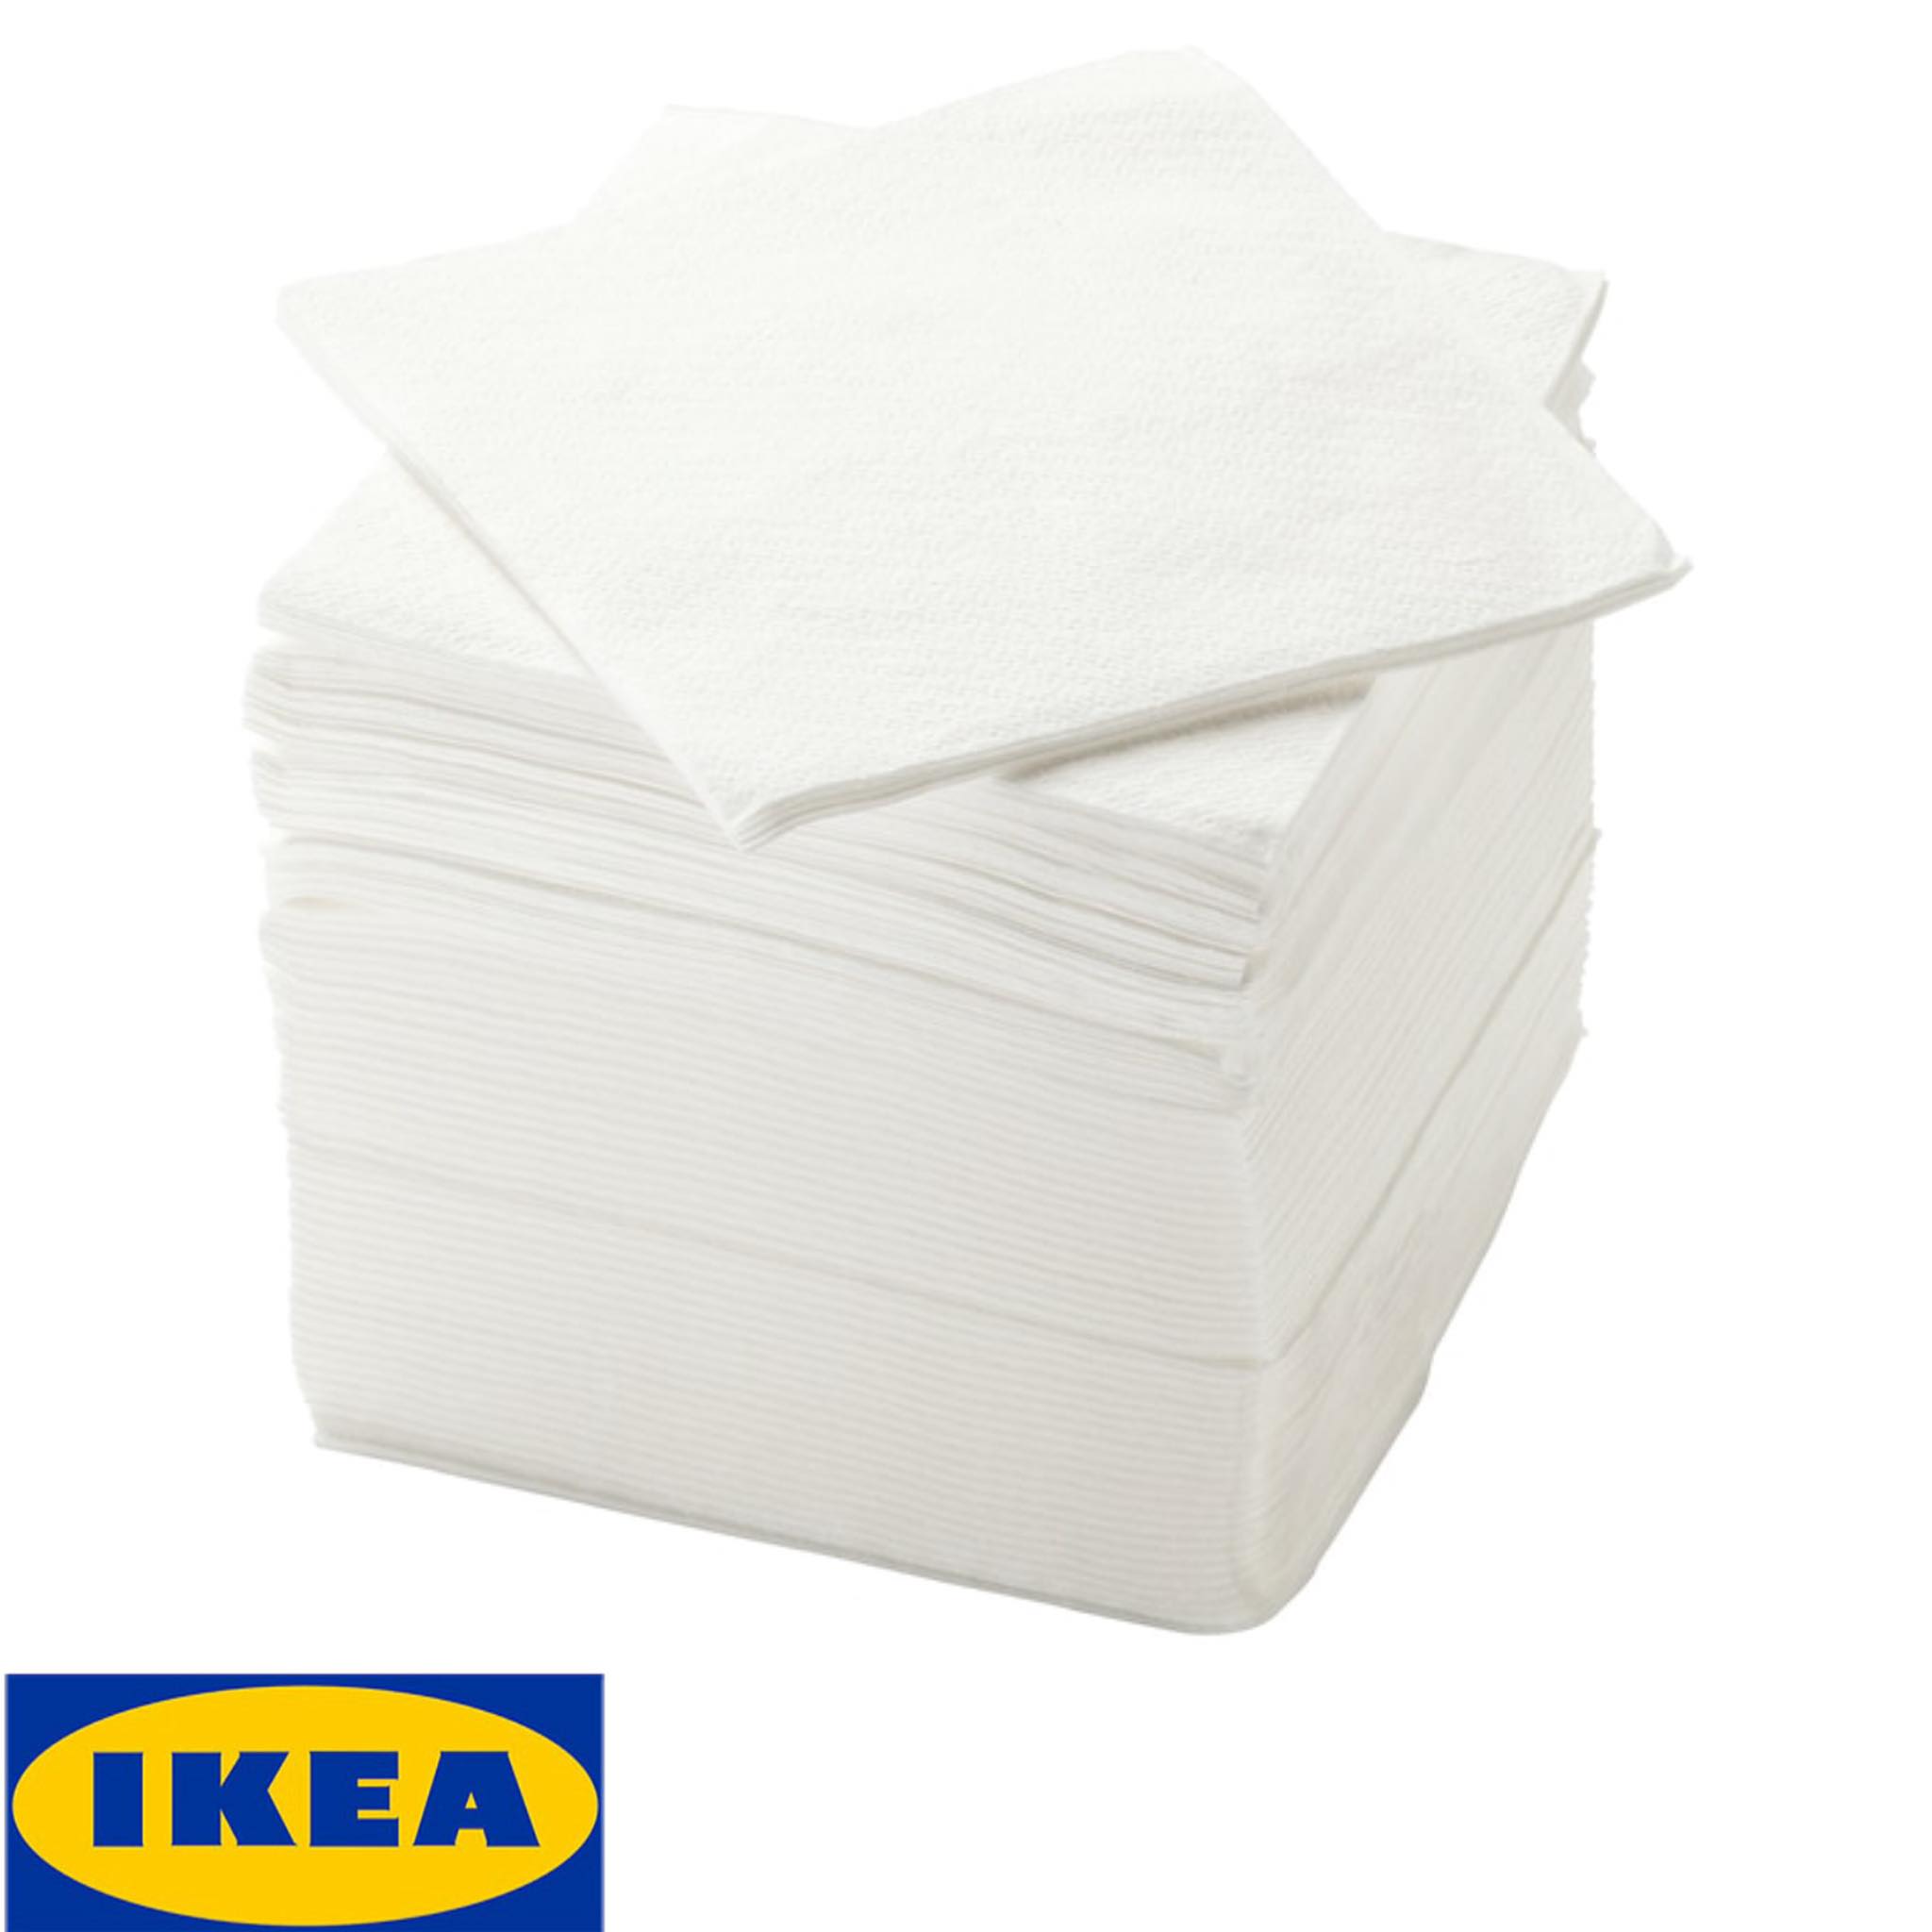 IKEA ของแท้ STORÄTARE สโตแรทาเร กระดาษเช็ดปาก, ขาว 30x30 ซม. 150 ชิ้น